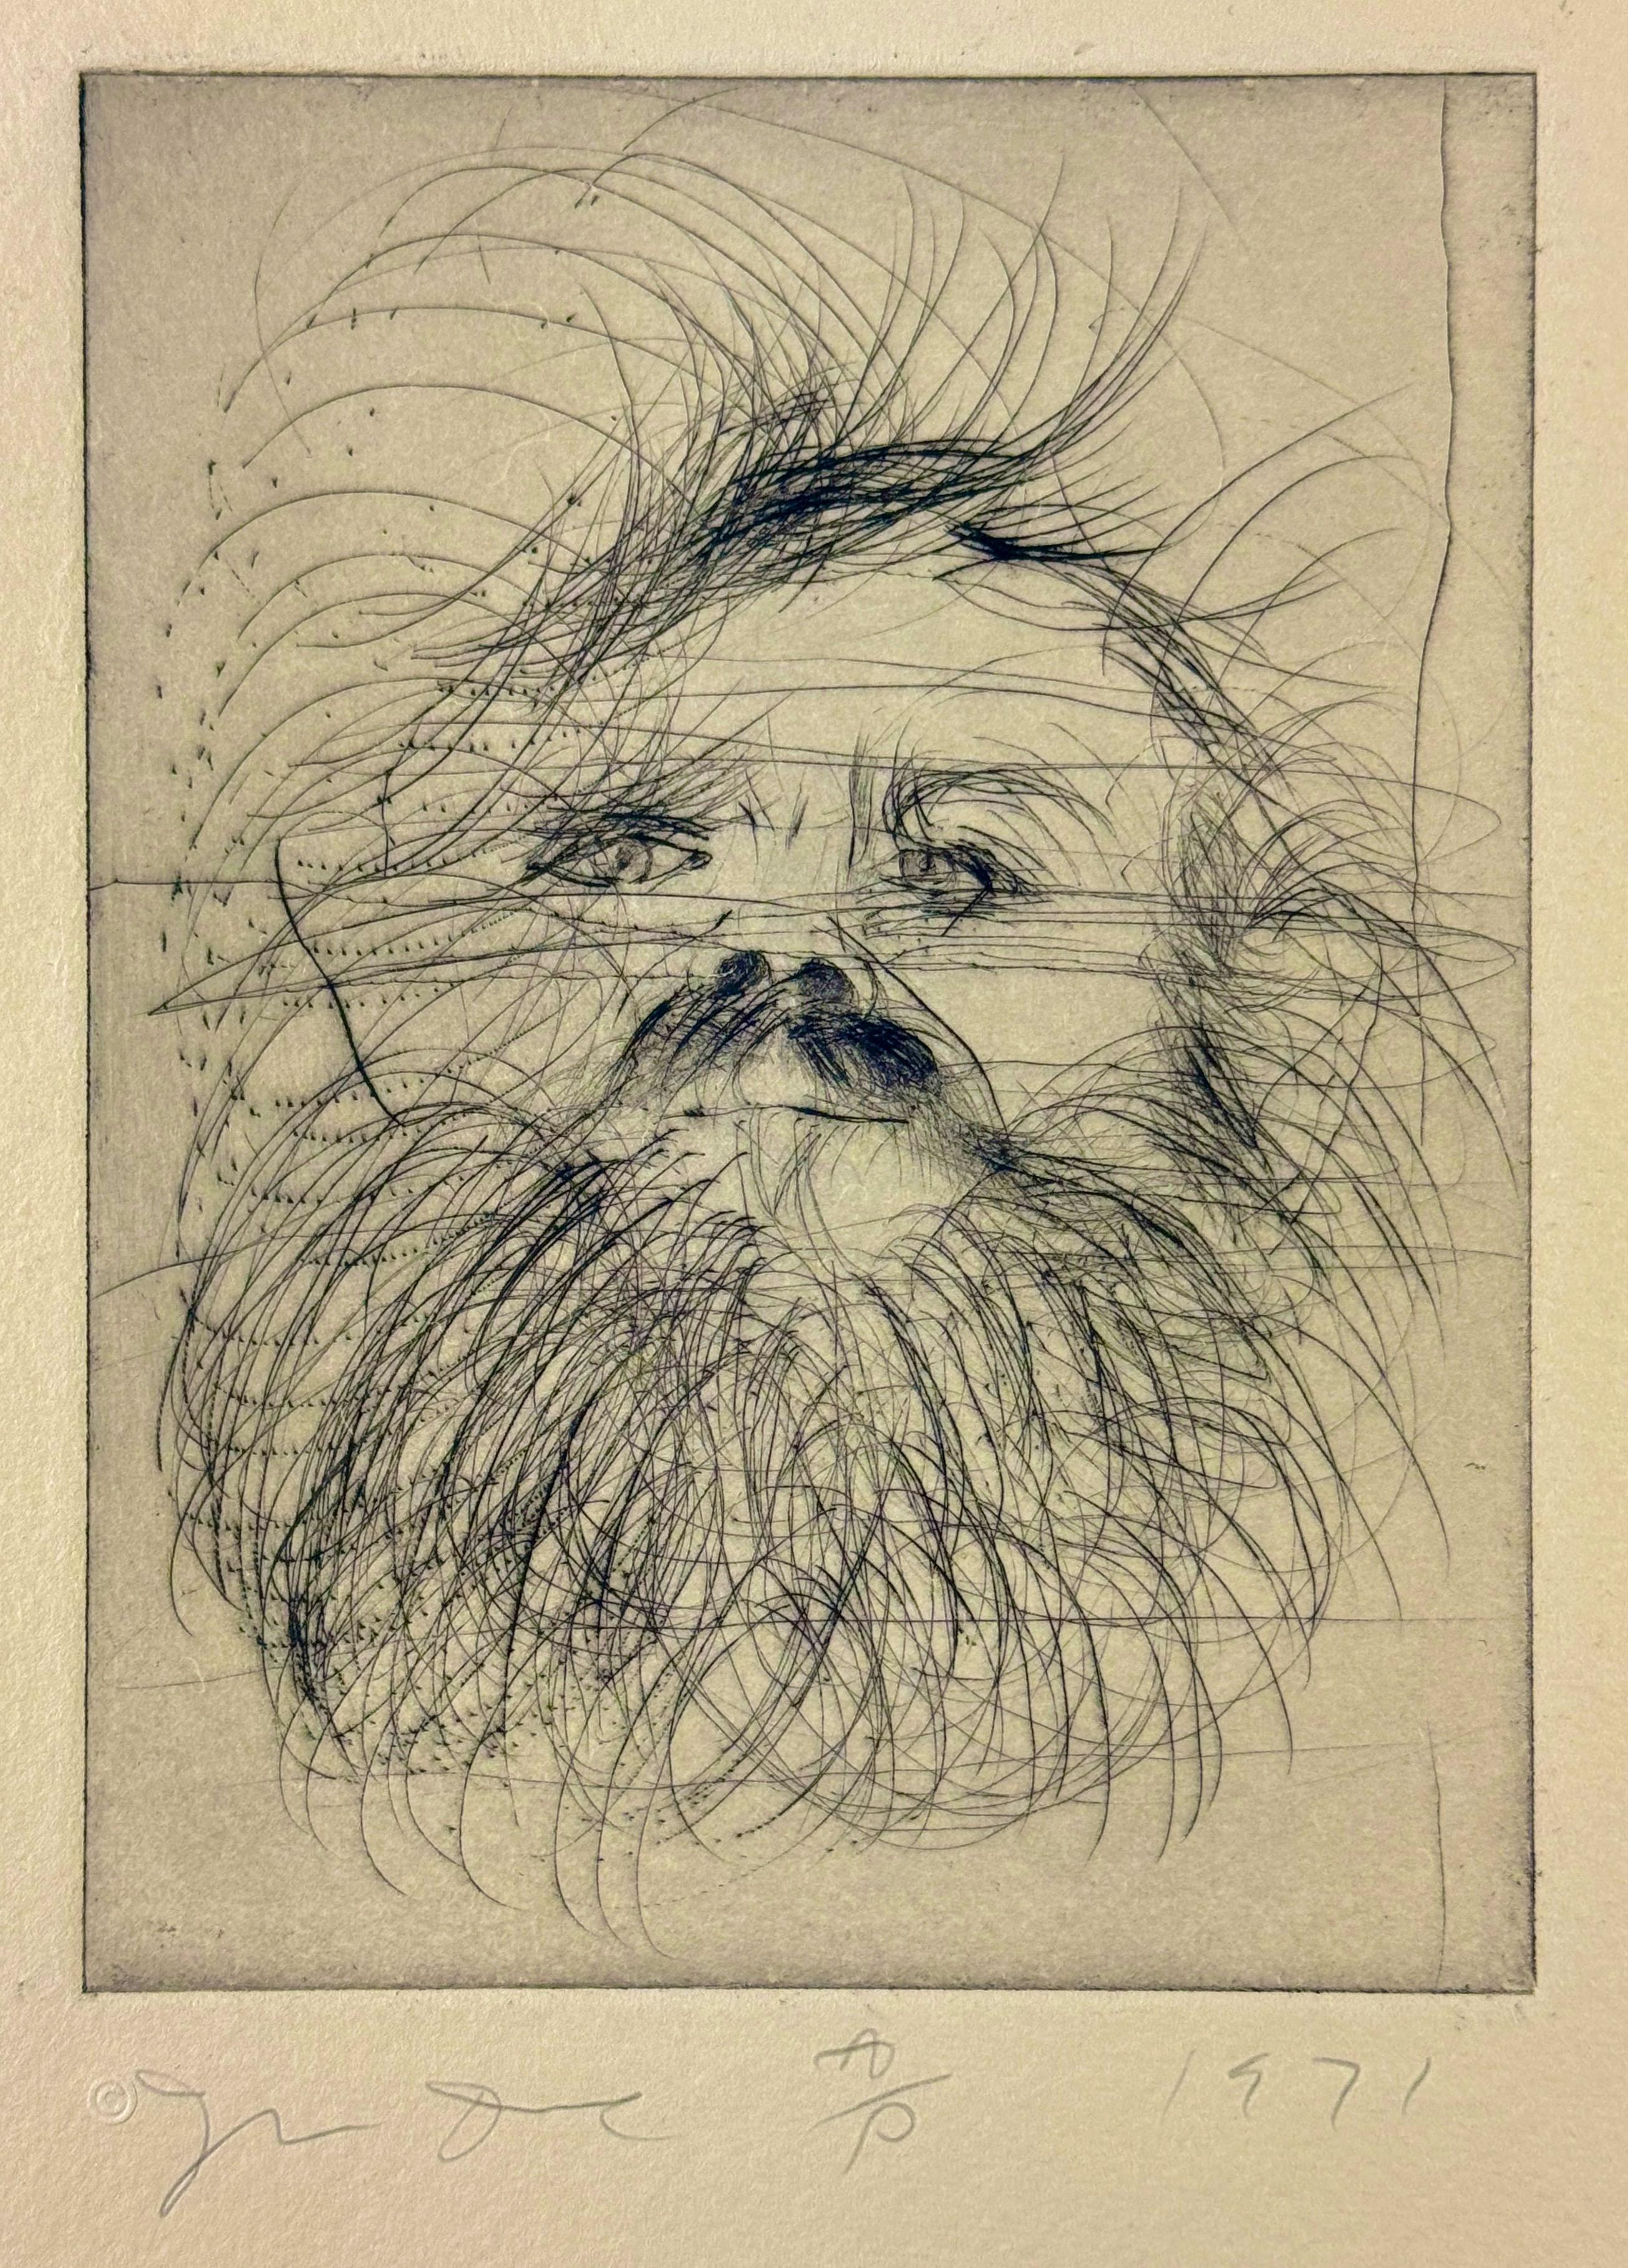 Jim Dine, Self-Portrait 
Pointe sèche sur papier Hodgkinson Hand Made Tone-Weave
Papier 18 x 14 in. / 46 x 36 cm
Plaque 8 x 6 in. / 20 x 15 cm
Plaque 1 du portfolio de neuf pointes sèches Self-Portraits (1971). Edition 25 + 5 épreuves d'artiste ;